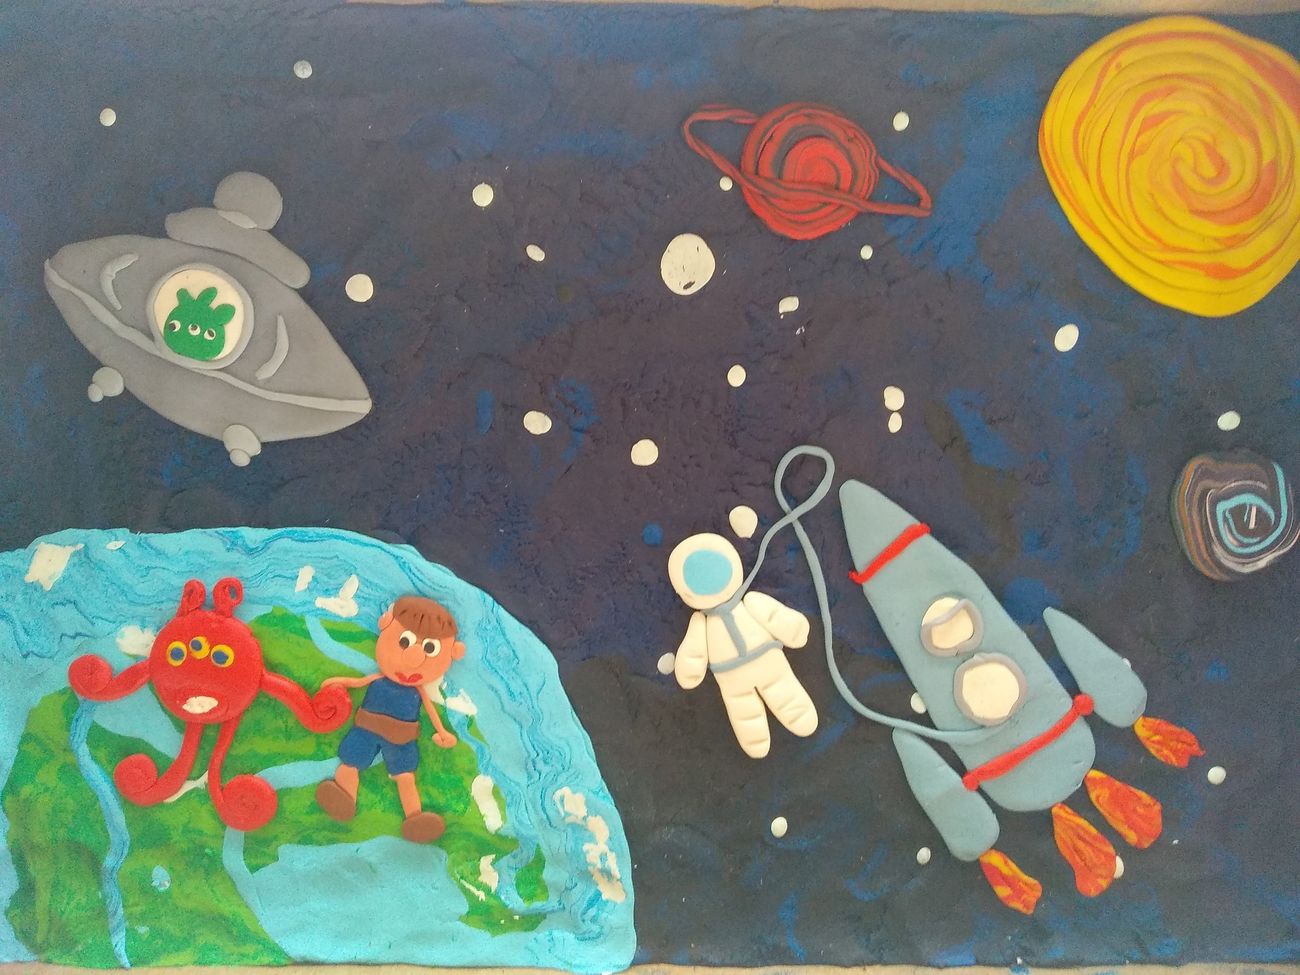 Банер про удивительный космос для детей в длину 5 метров